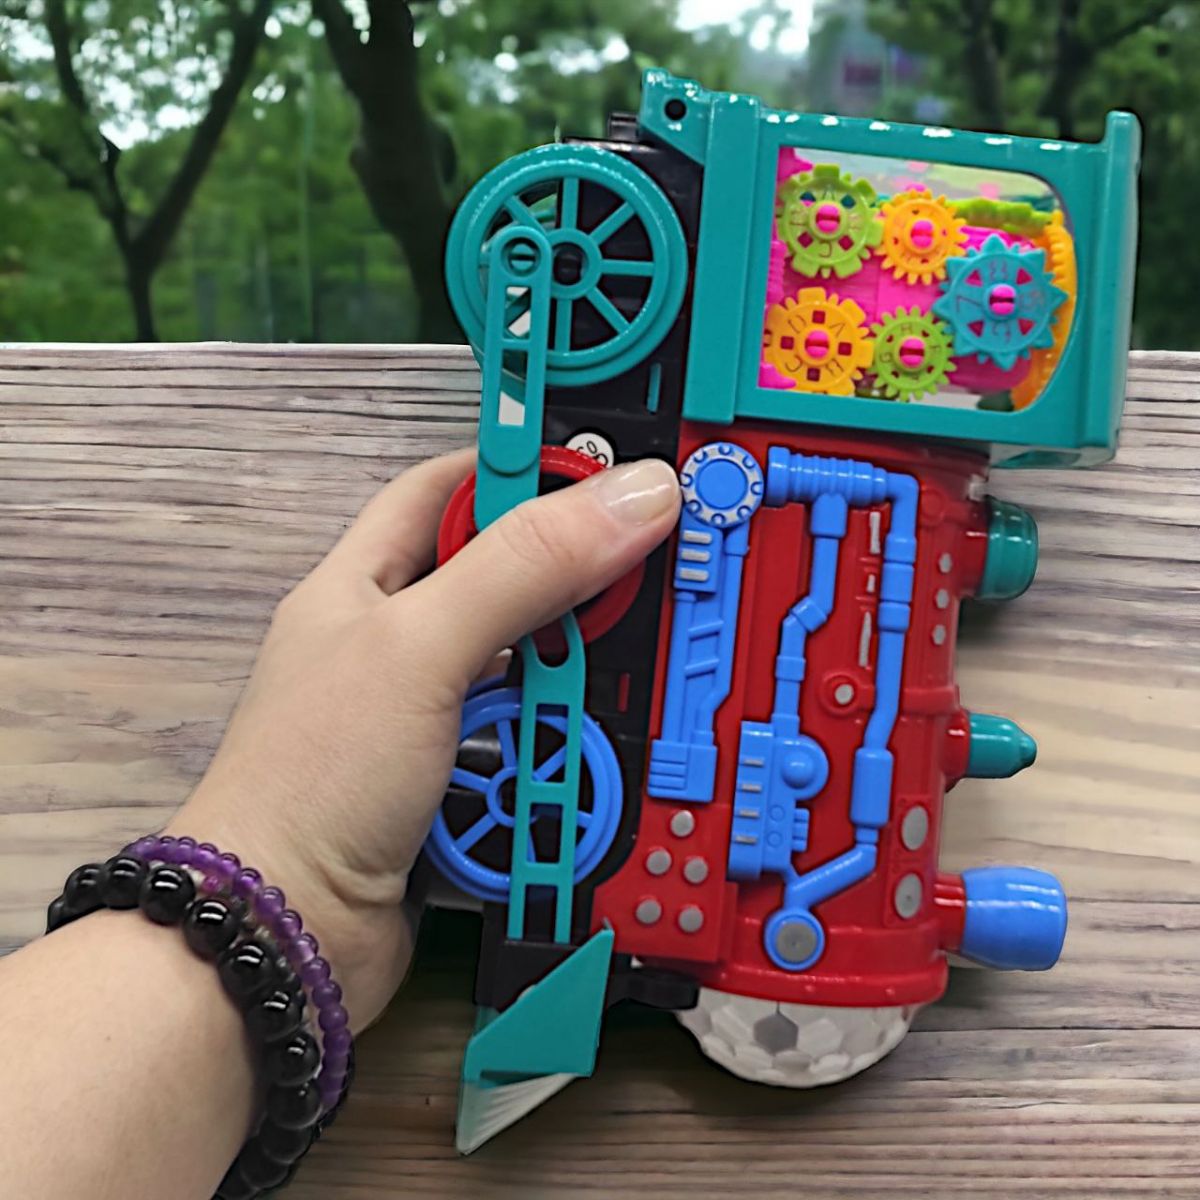 Интерактивная игрушка с шестернями "Gear Train", вид 3